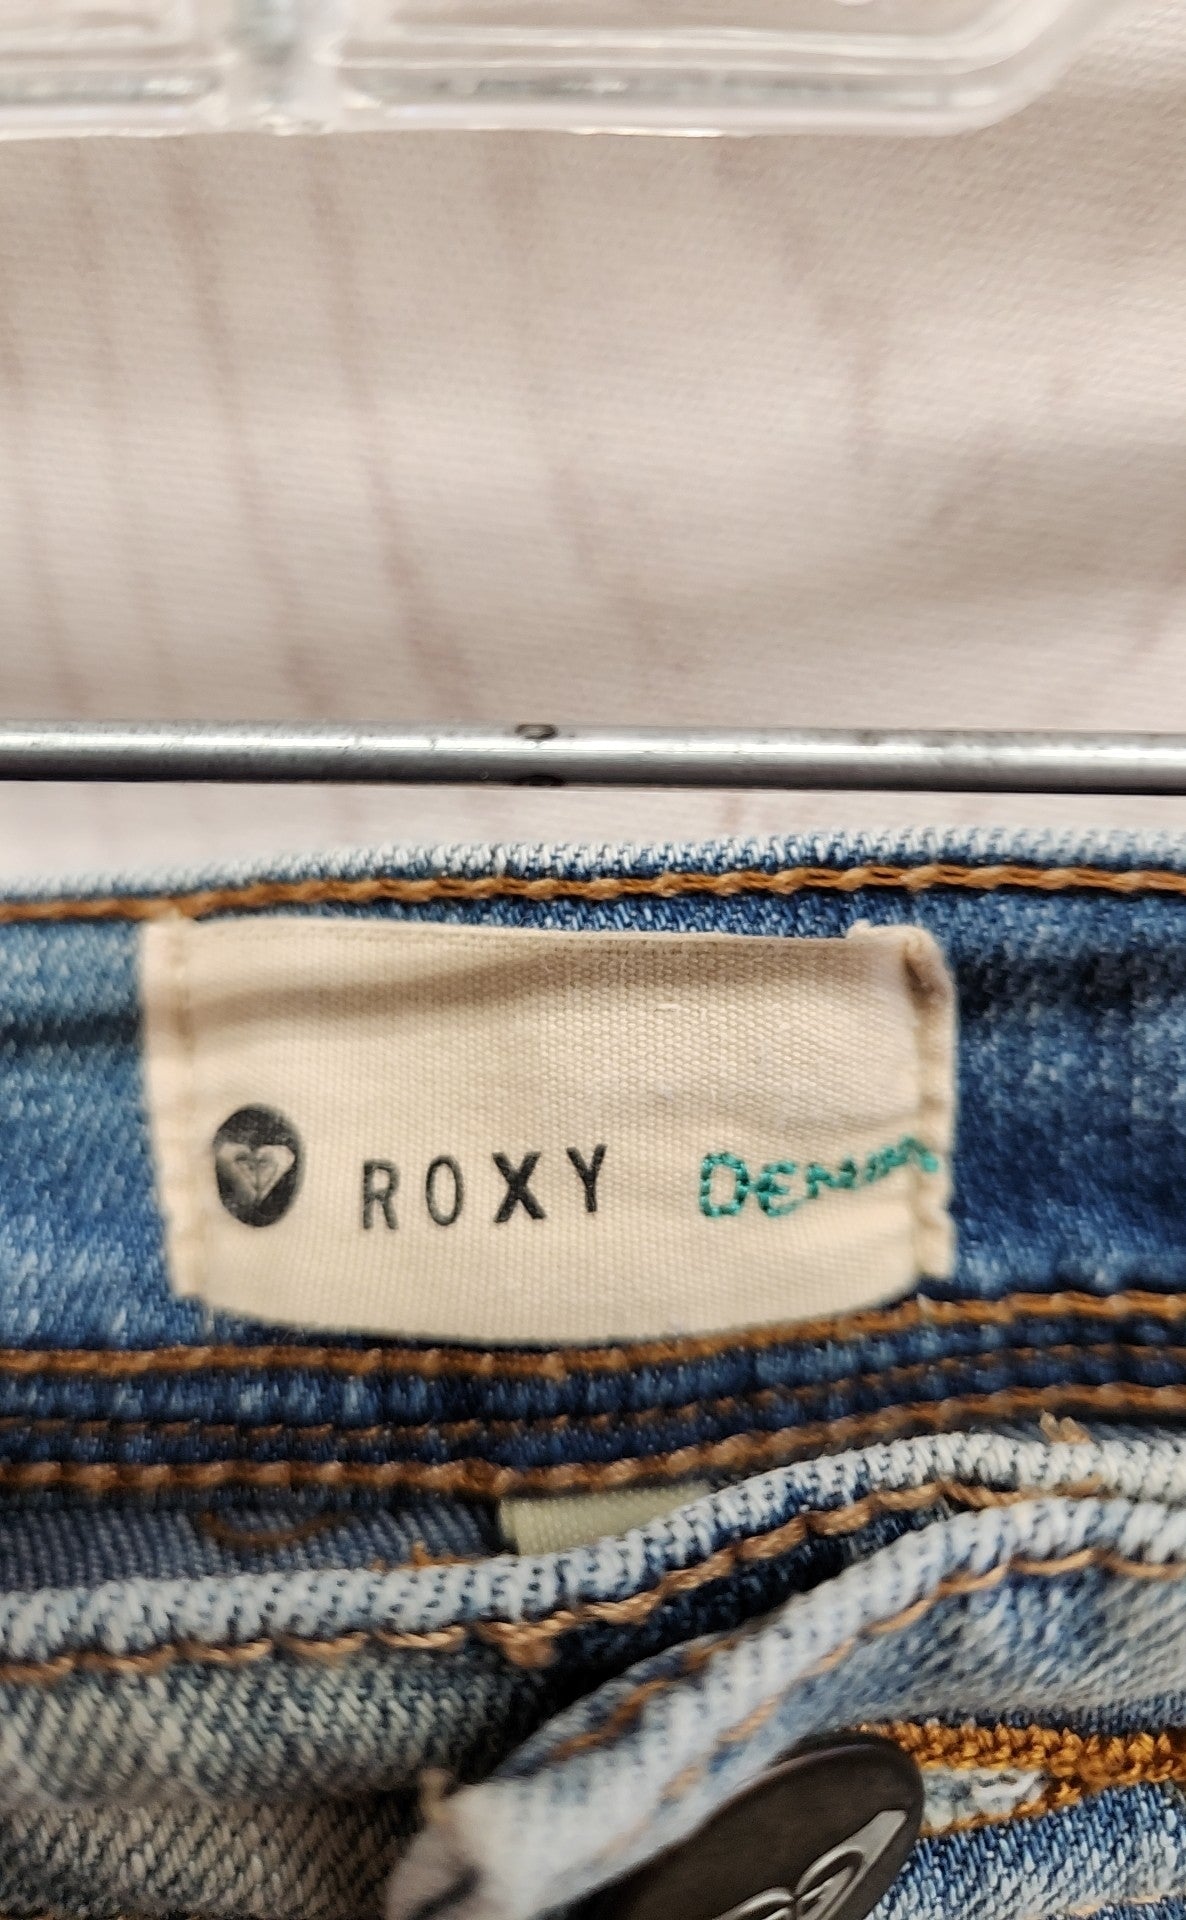 Roxy Women's Size 29 (7-8) Blue Shorts